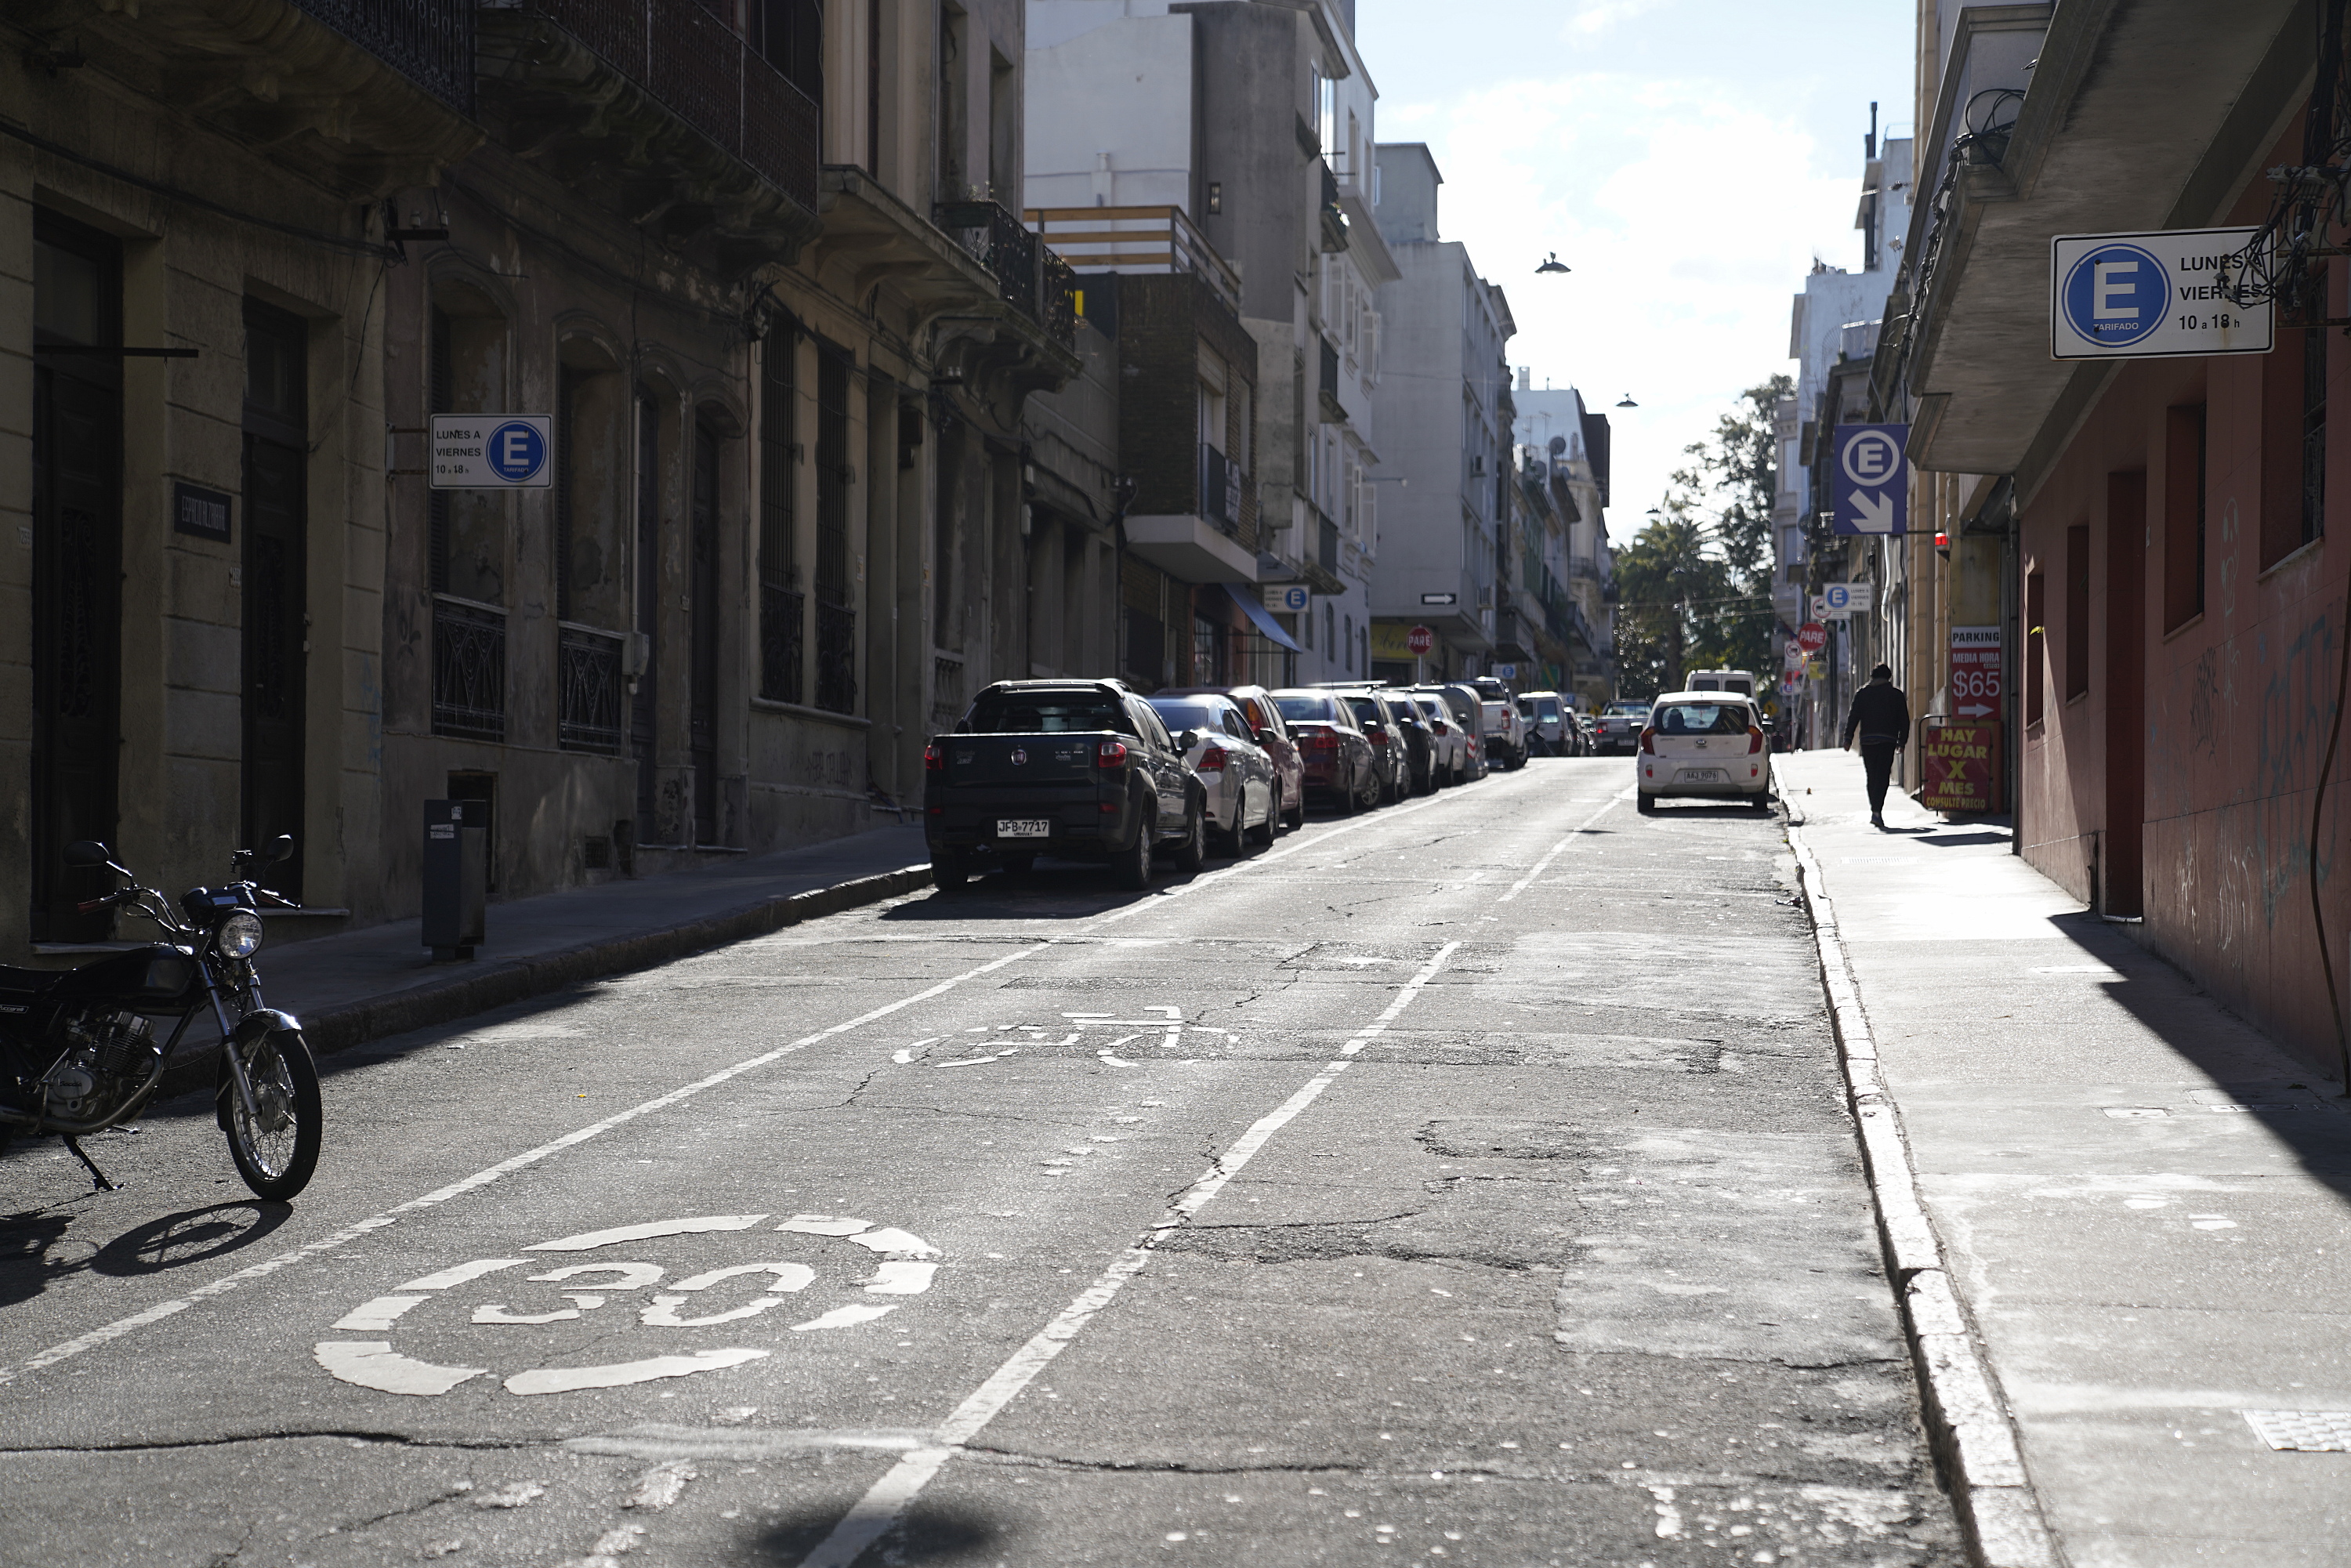 Bicicircuito Montevideo. Calle Alzáibar